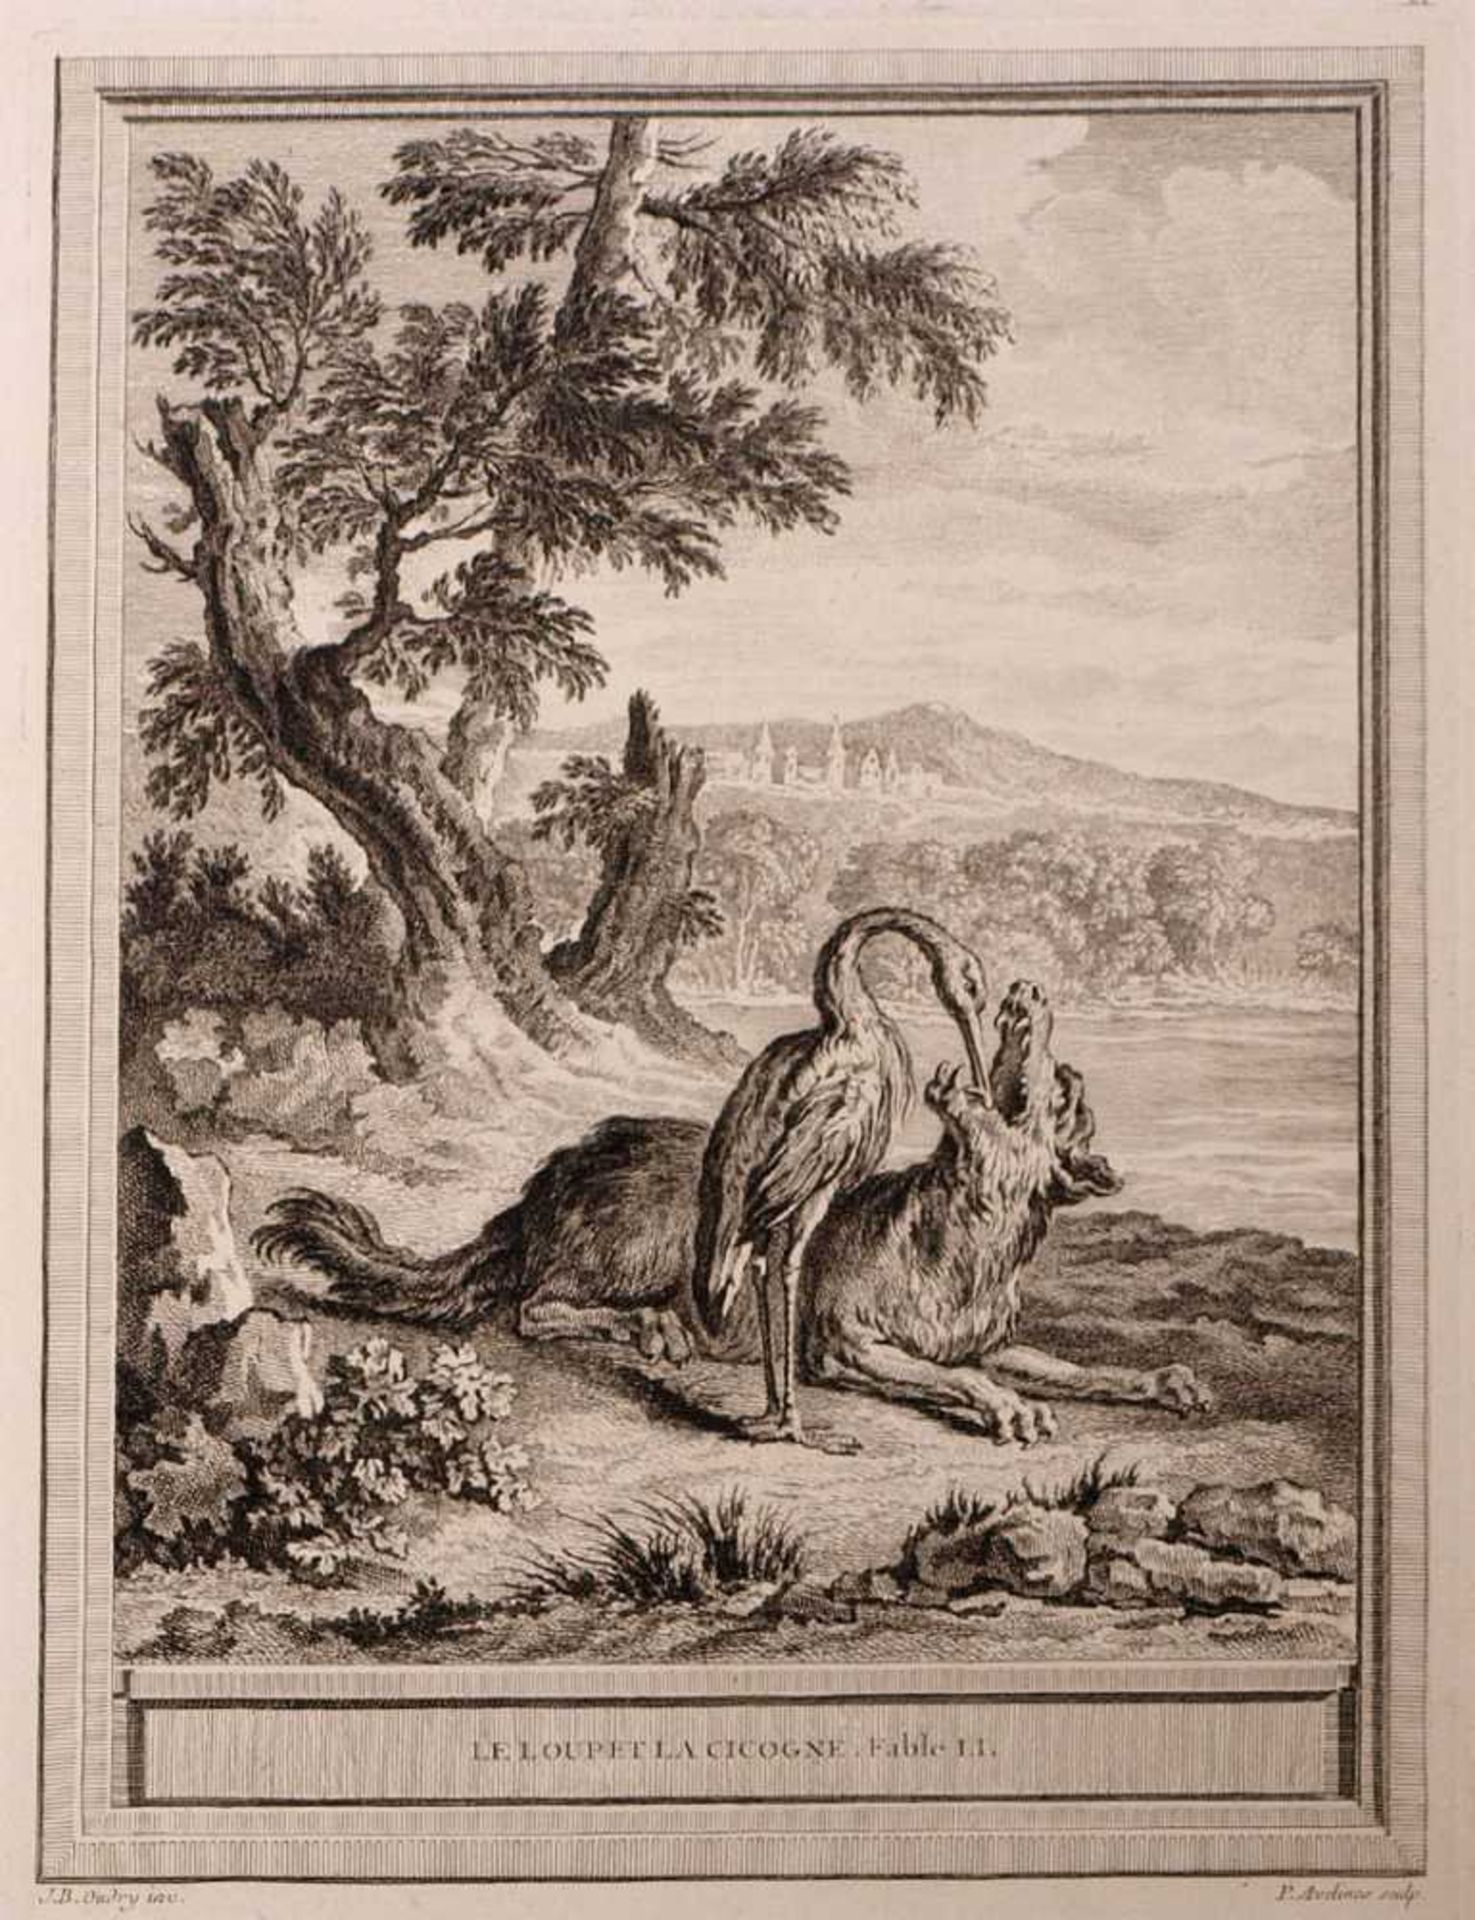 Kupferstich, 18./19.Jhdt.Illustration zur Fabel "Der Wolf und der Storch". Blattgröße 39x26,5cm.